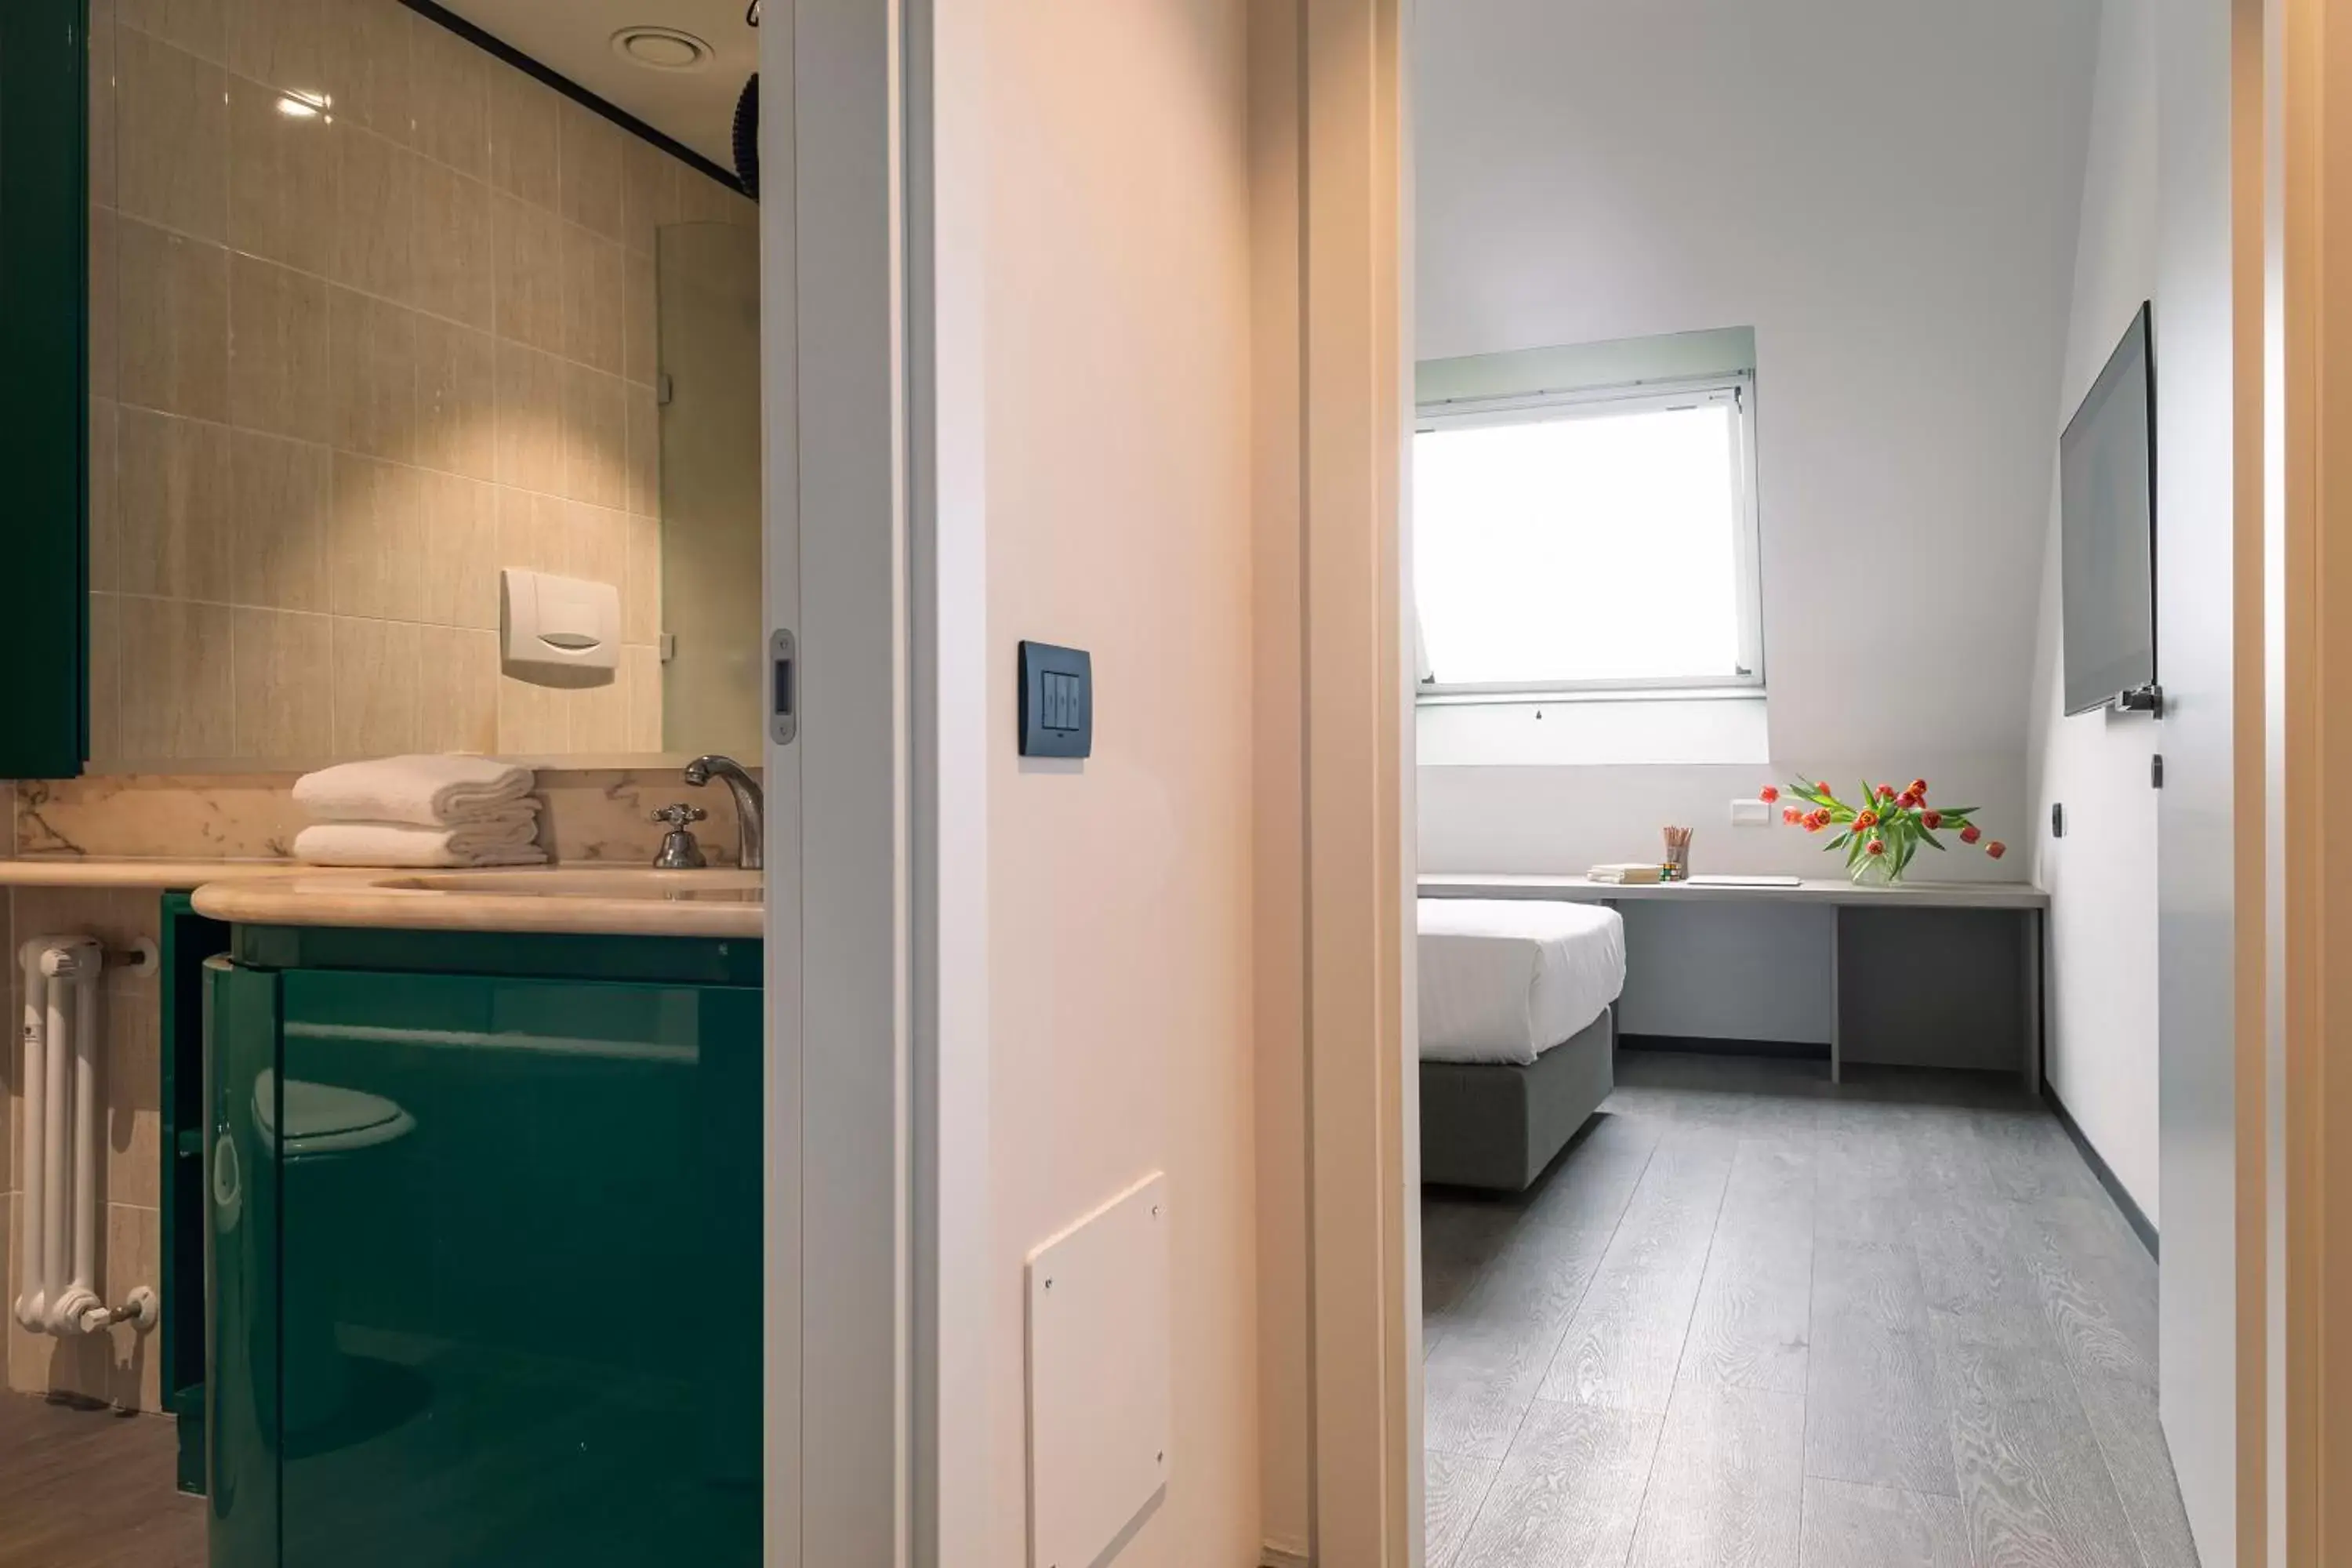 Bedroom, Bathroom in Quark Hotel Milano